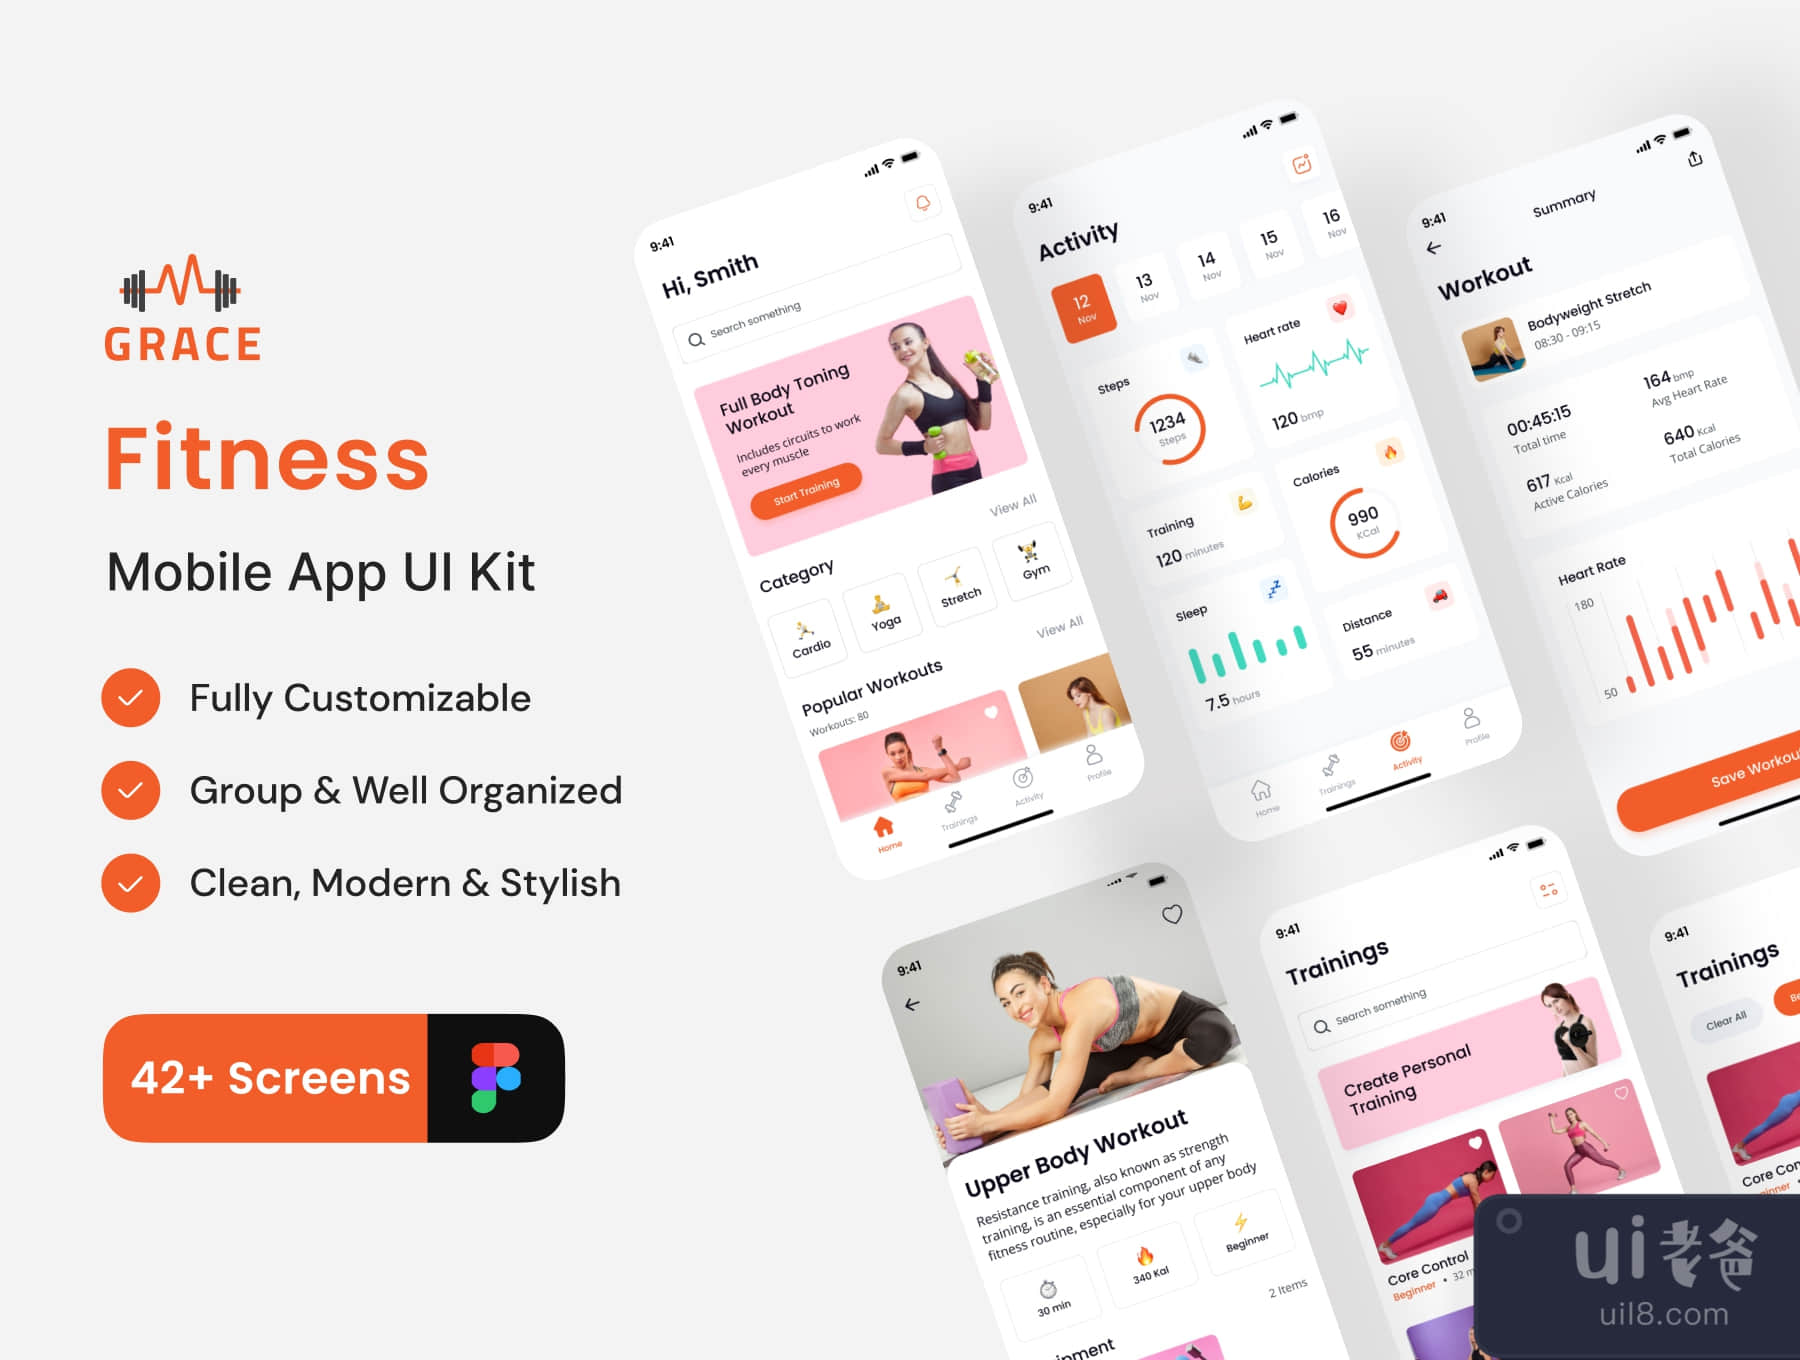 格蕾丝 - 健身应用UI套件 (Grace - Fitness App UI Kit)插图4